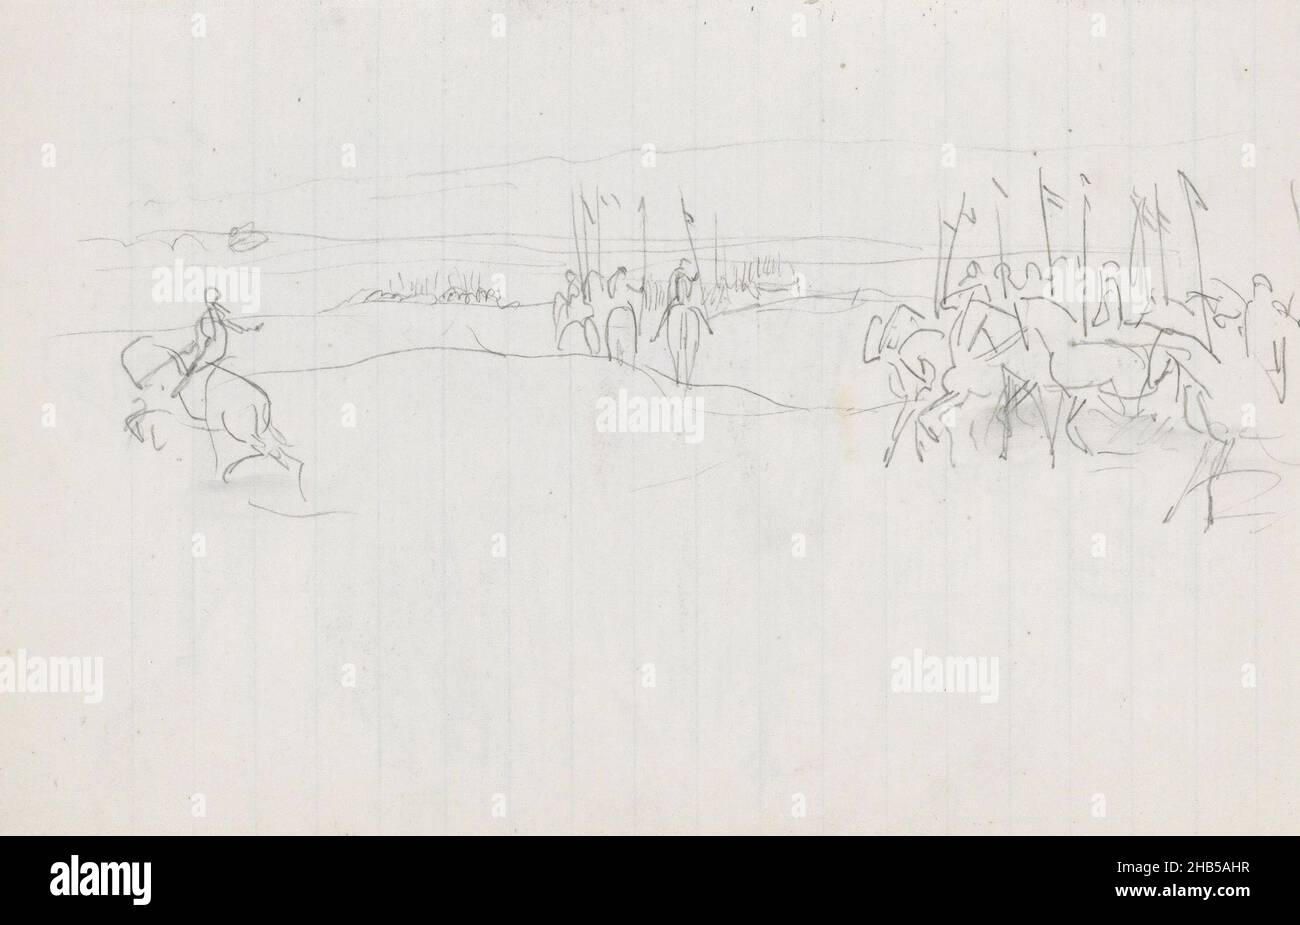 Les soldats portent des drapeaux.Page 93 à partir d'un carnet de 62 pages, Paysage avec des soldats indiens à cheval., dessinateur: Marius Bauer, Inde, 1897 - 1898, Marius Bauer,1897 - 1898 Banque D'Images